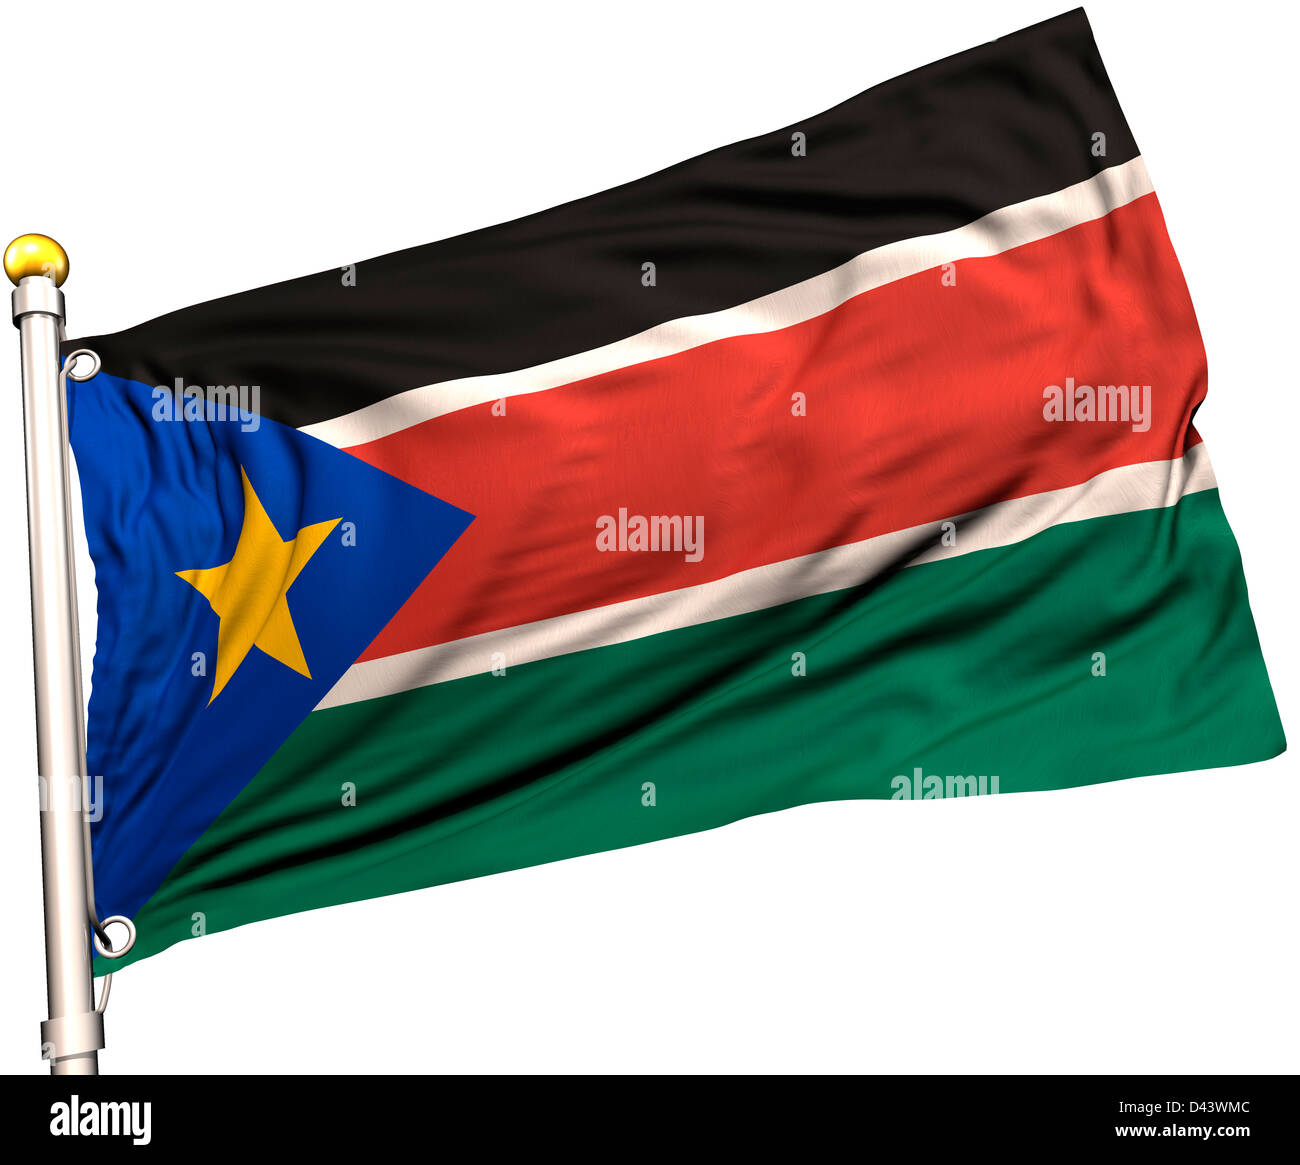 El Sur De Sudán La Bandera En Un Mástil De Bandera Trazado De Recorte Incluido Textura De Seda